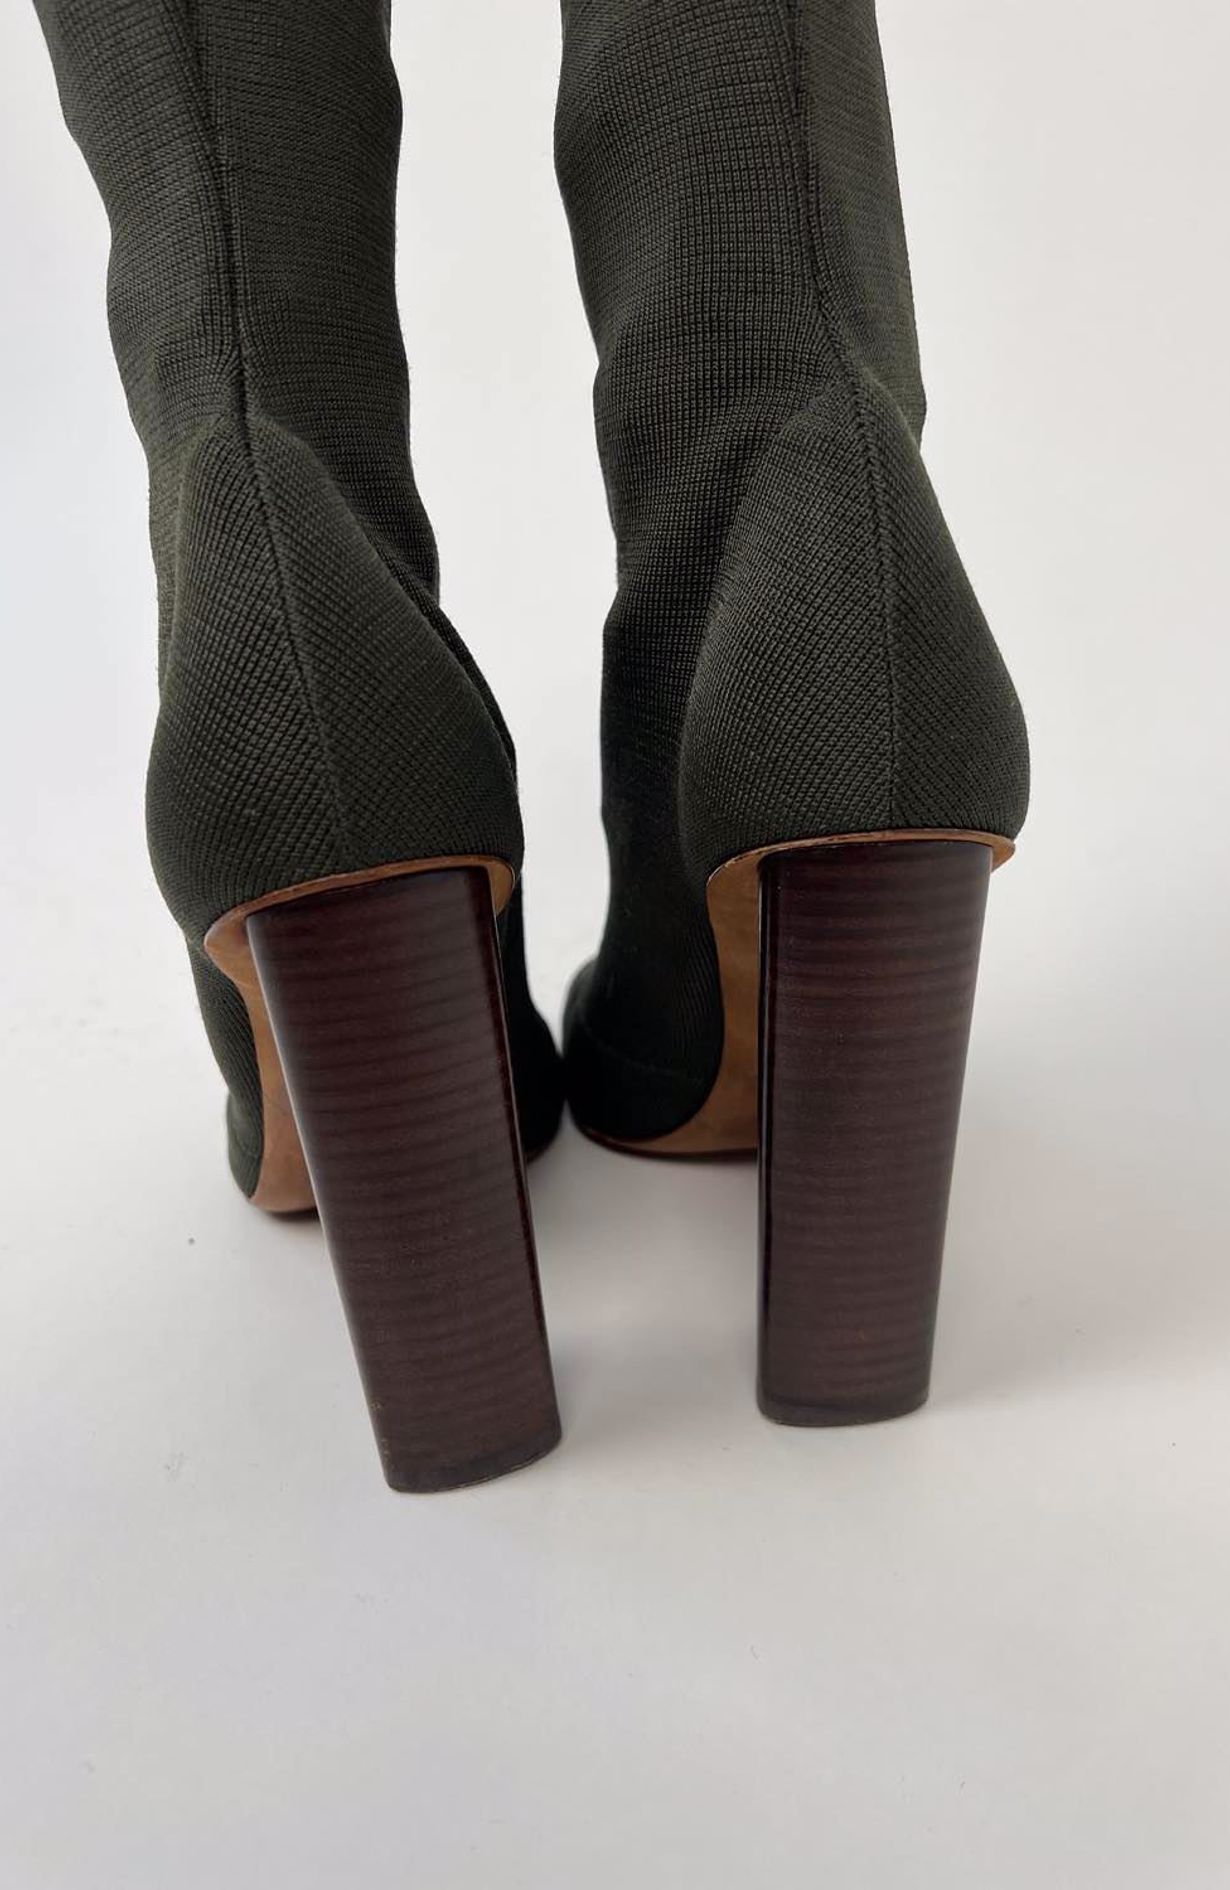 Yeezy Heels Sock Boots Season 2 size 37